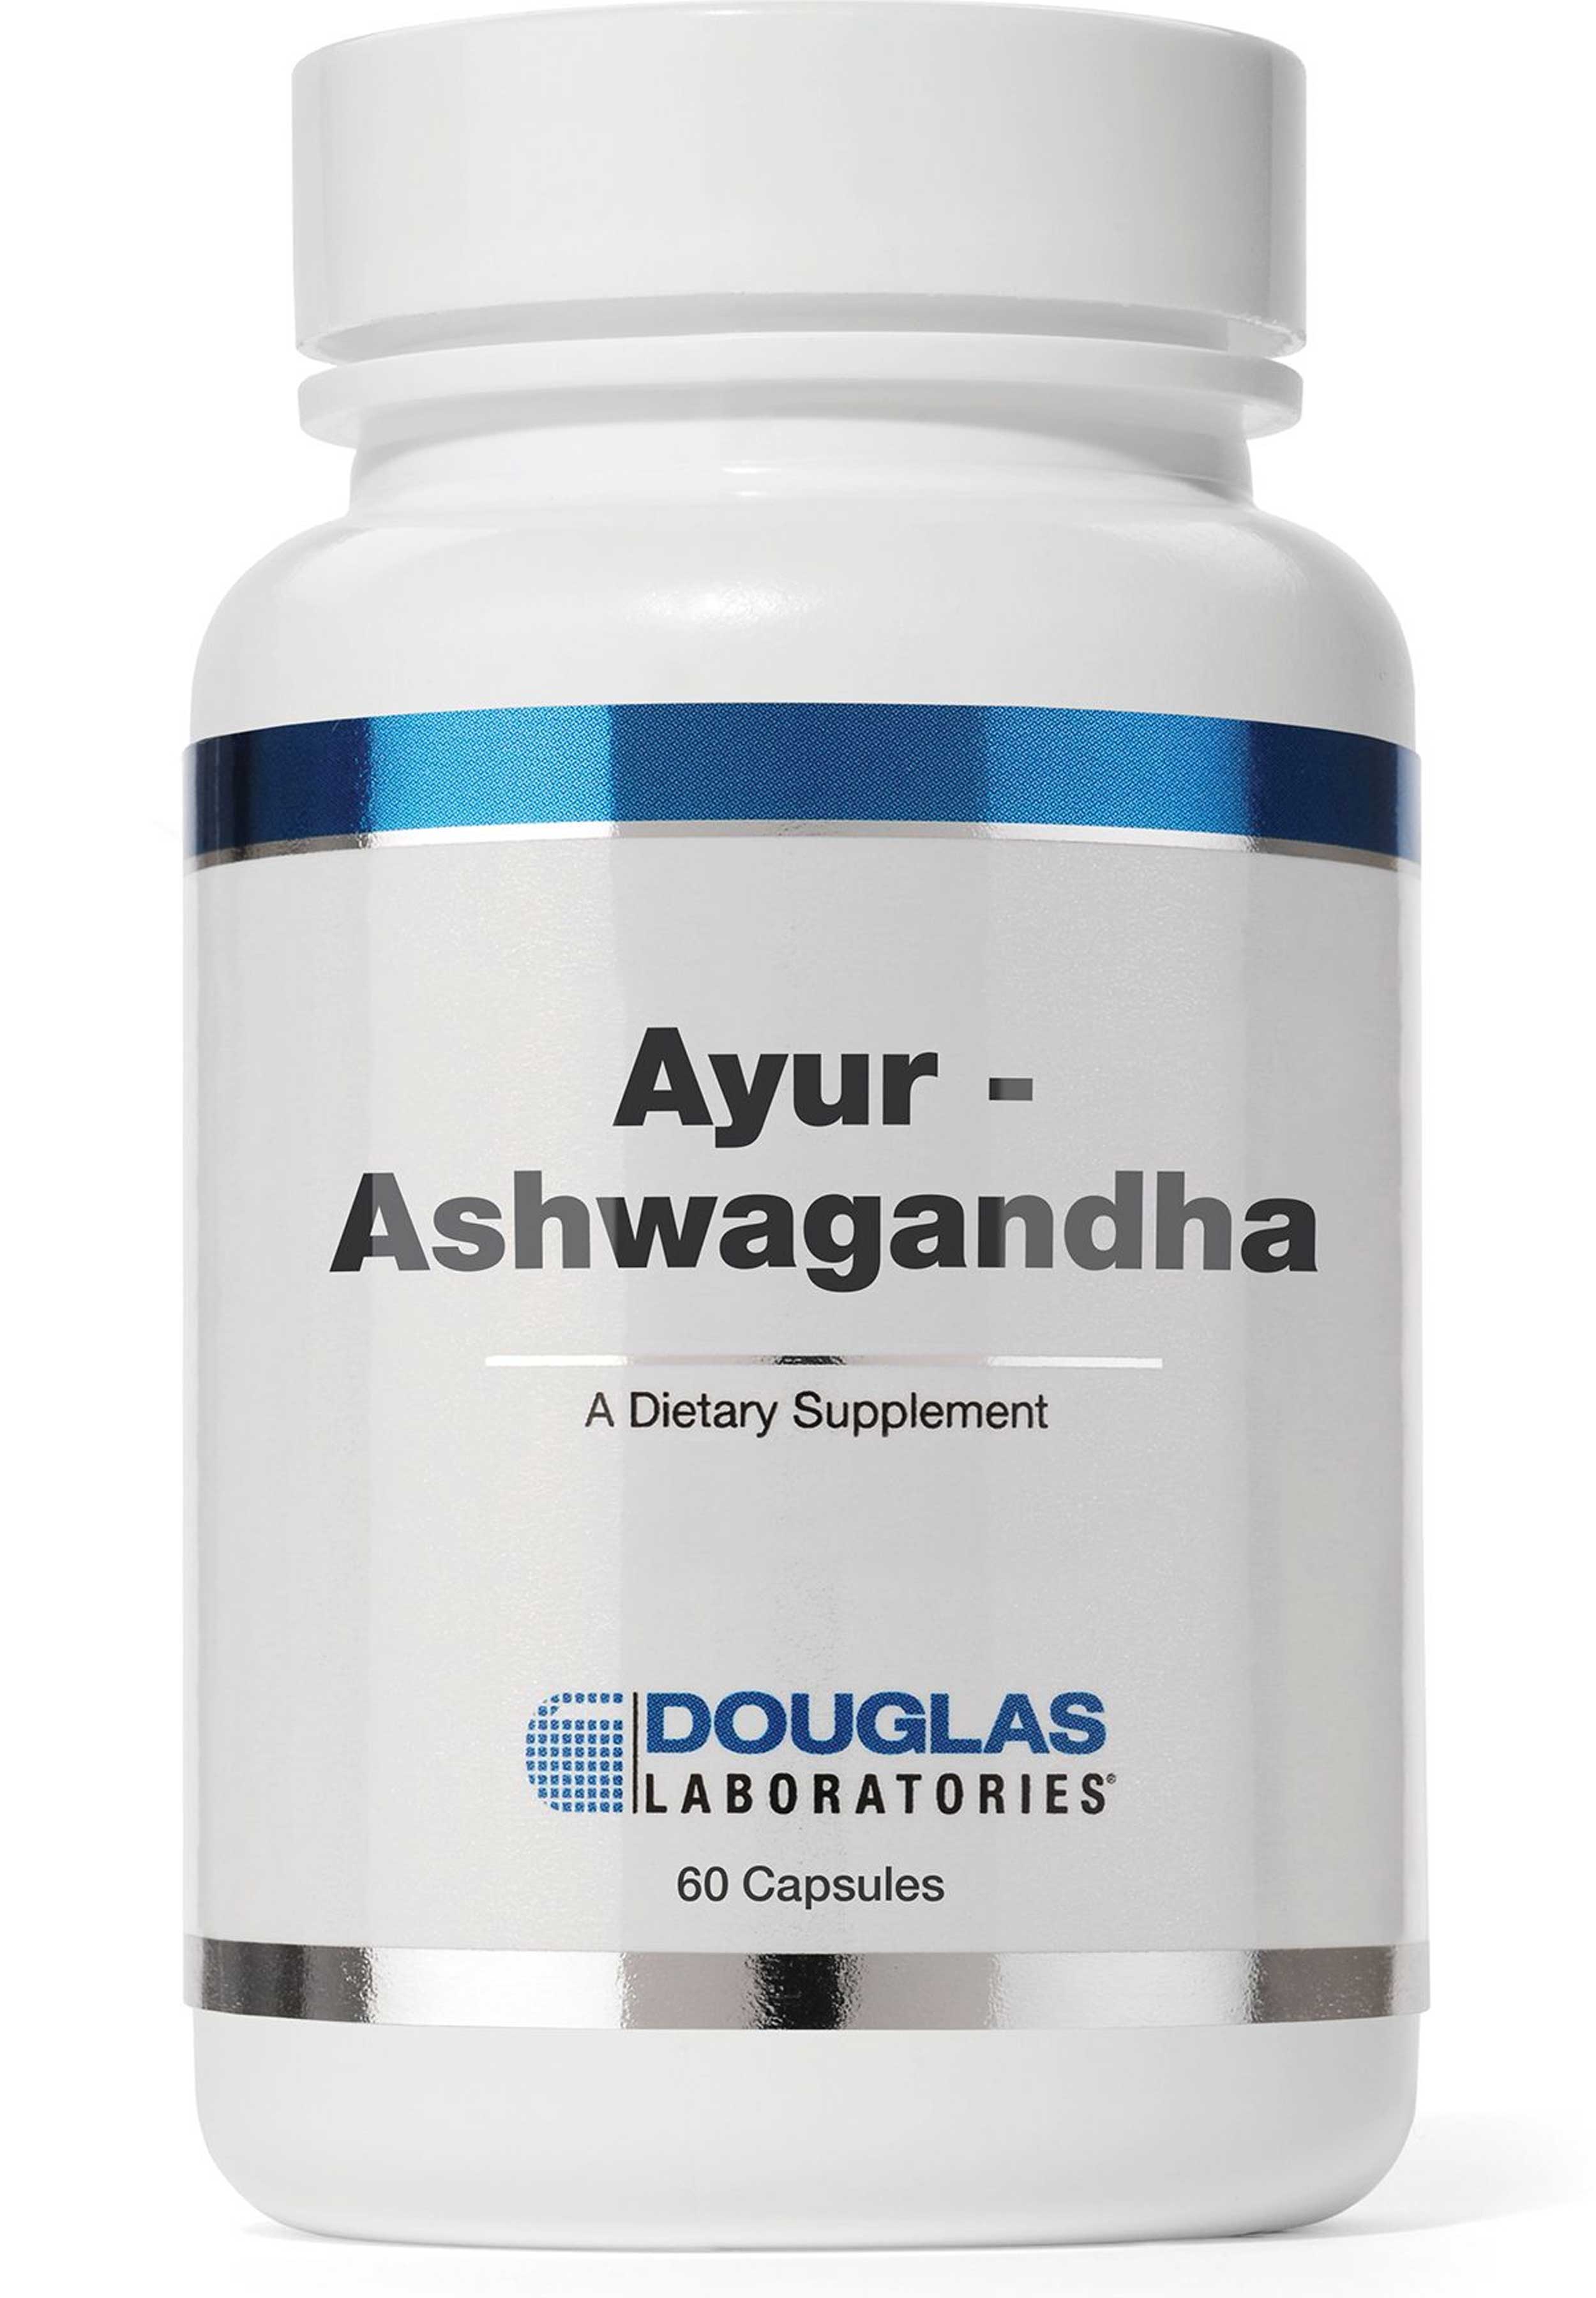 Douglas Laboratories Ayur-Ashwagandha